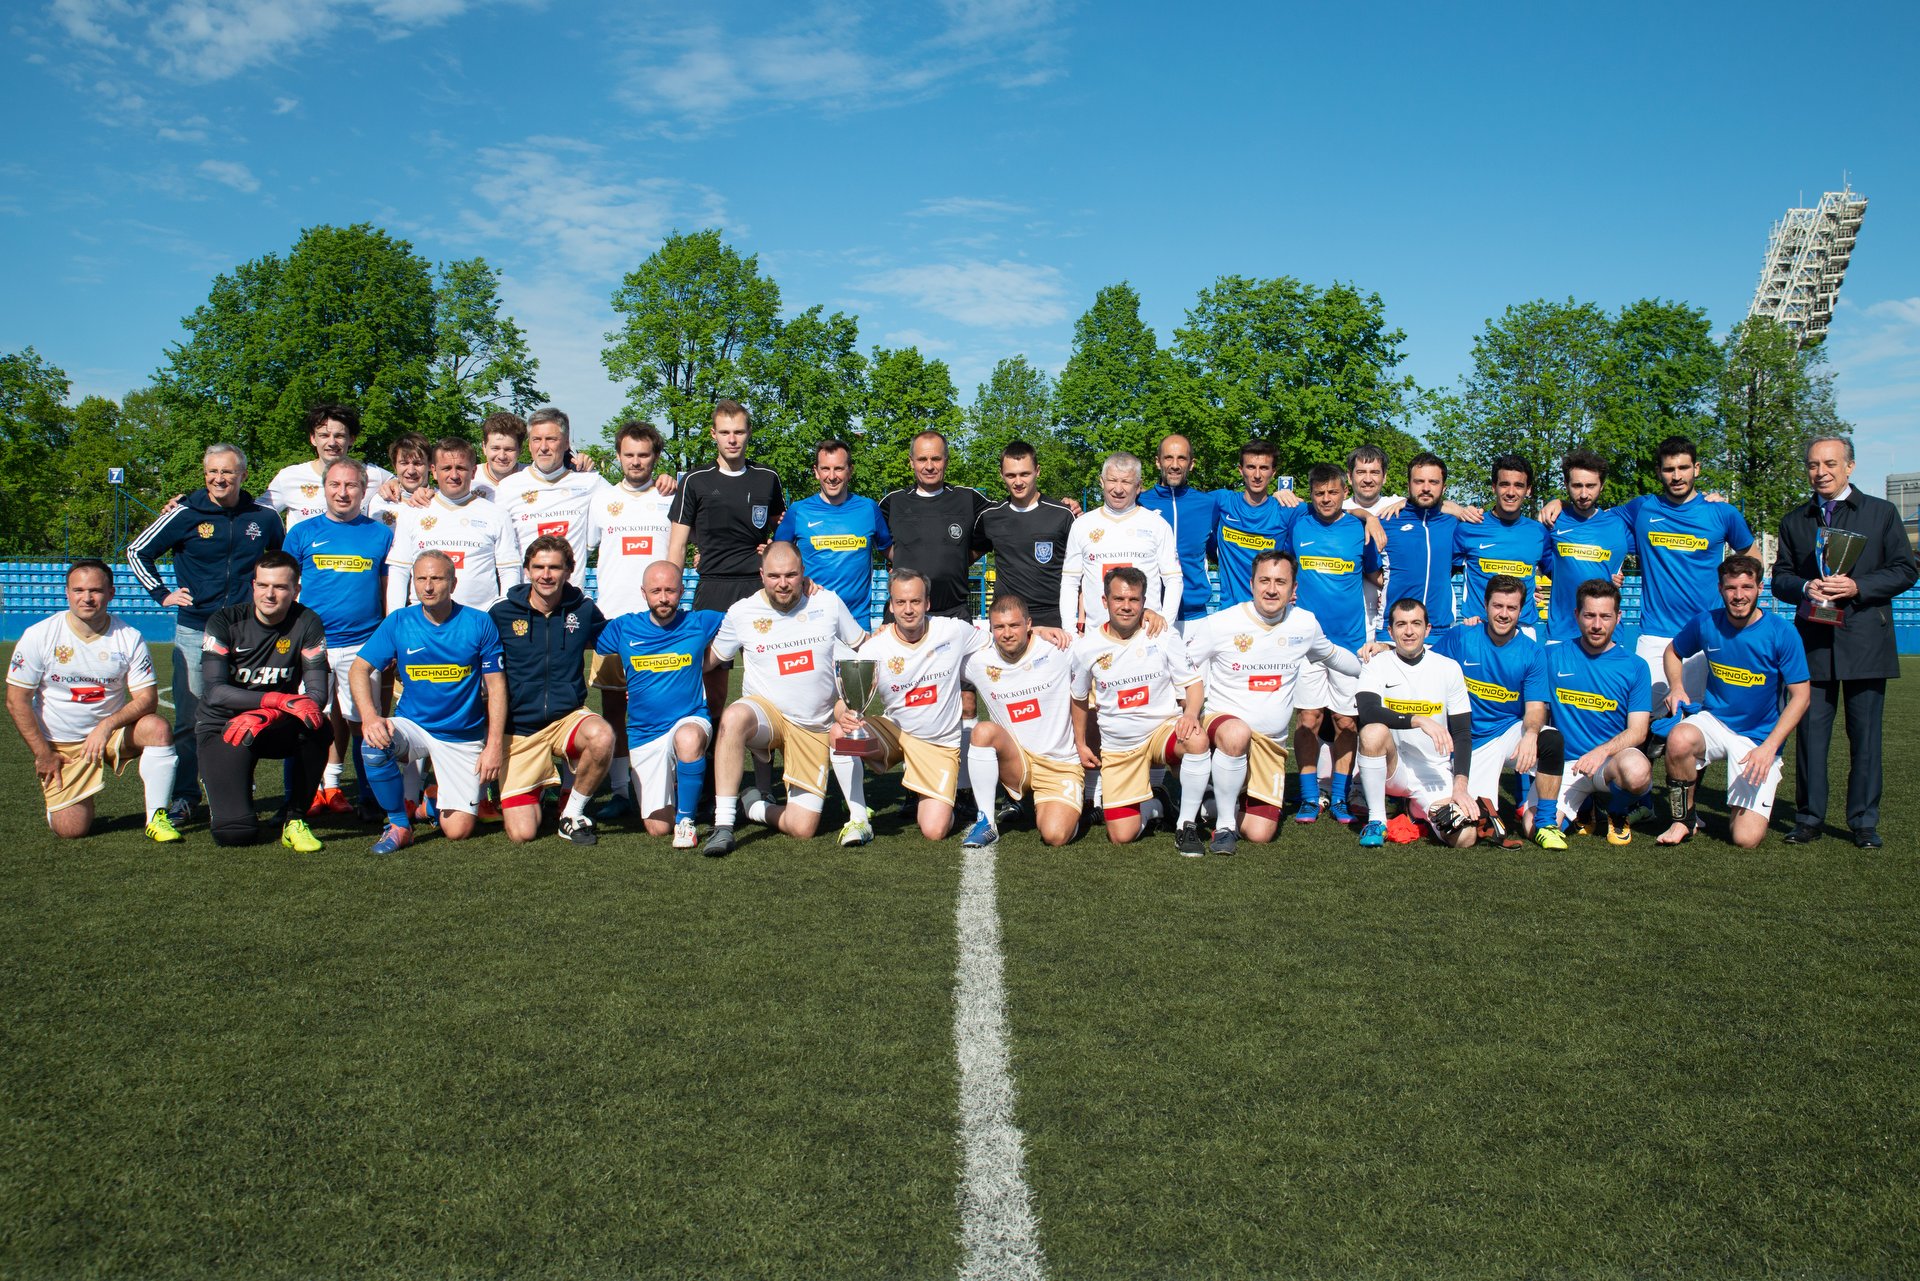 Футбольный матч дружбы России и Италии открыл спортивную программу ПМЭФ-2018